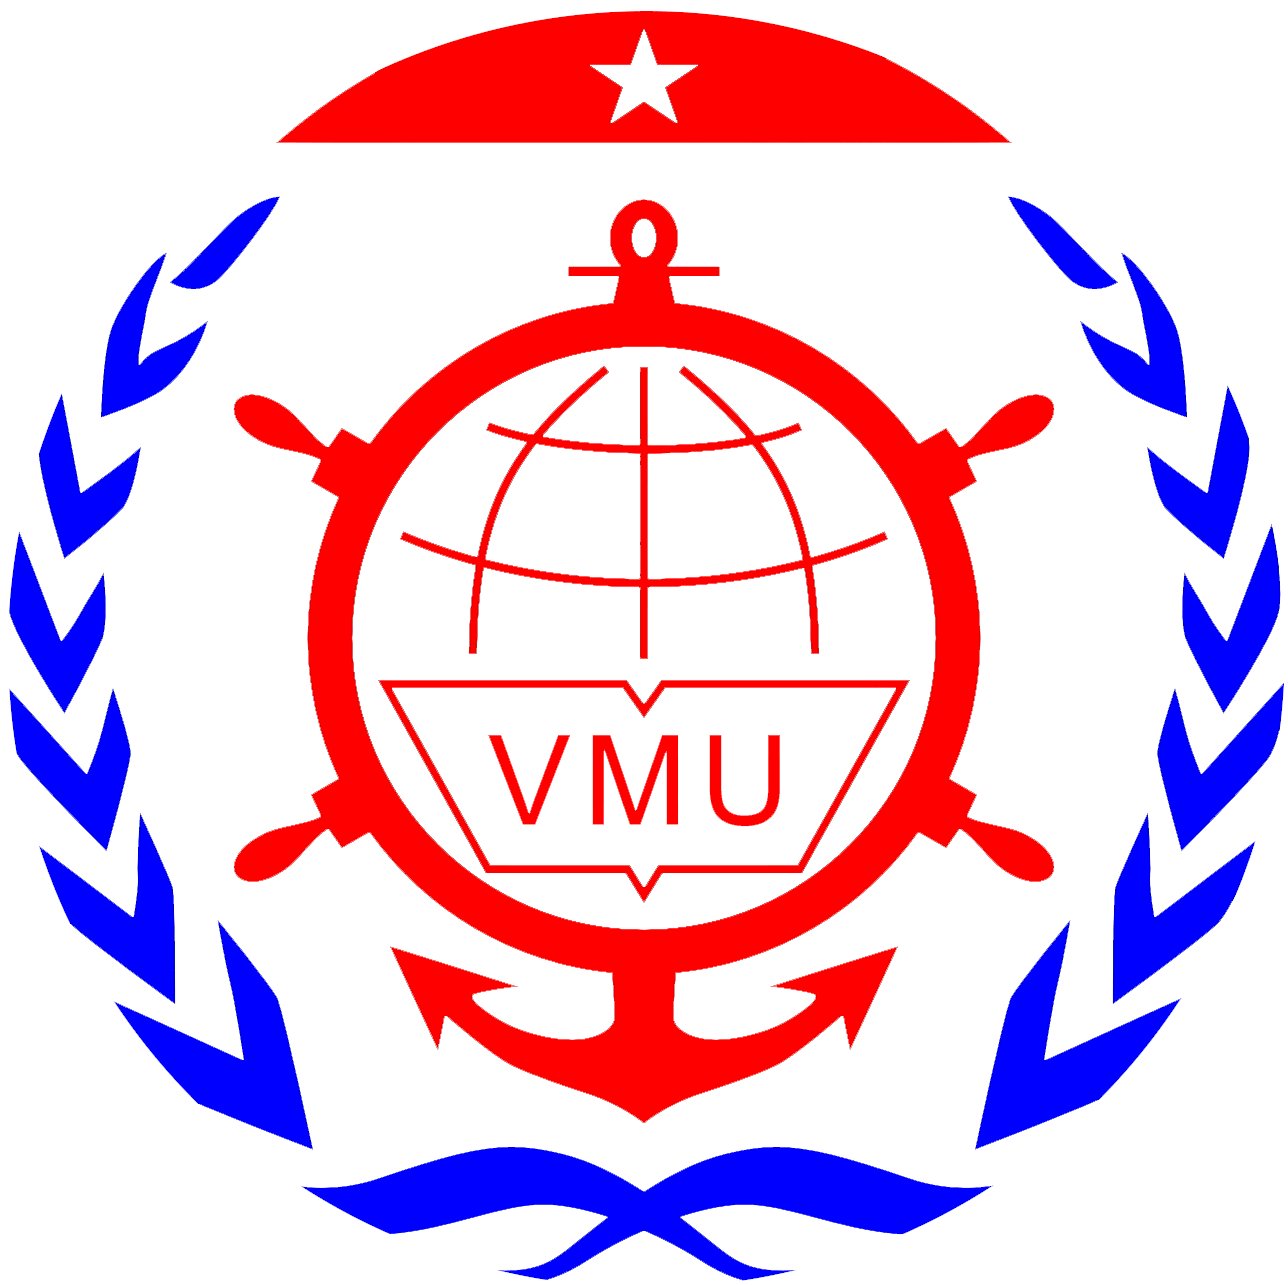 Tải logo Đại Học Hàng Hải (VMU) file vector, AI, EPS, SVG, PNG